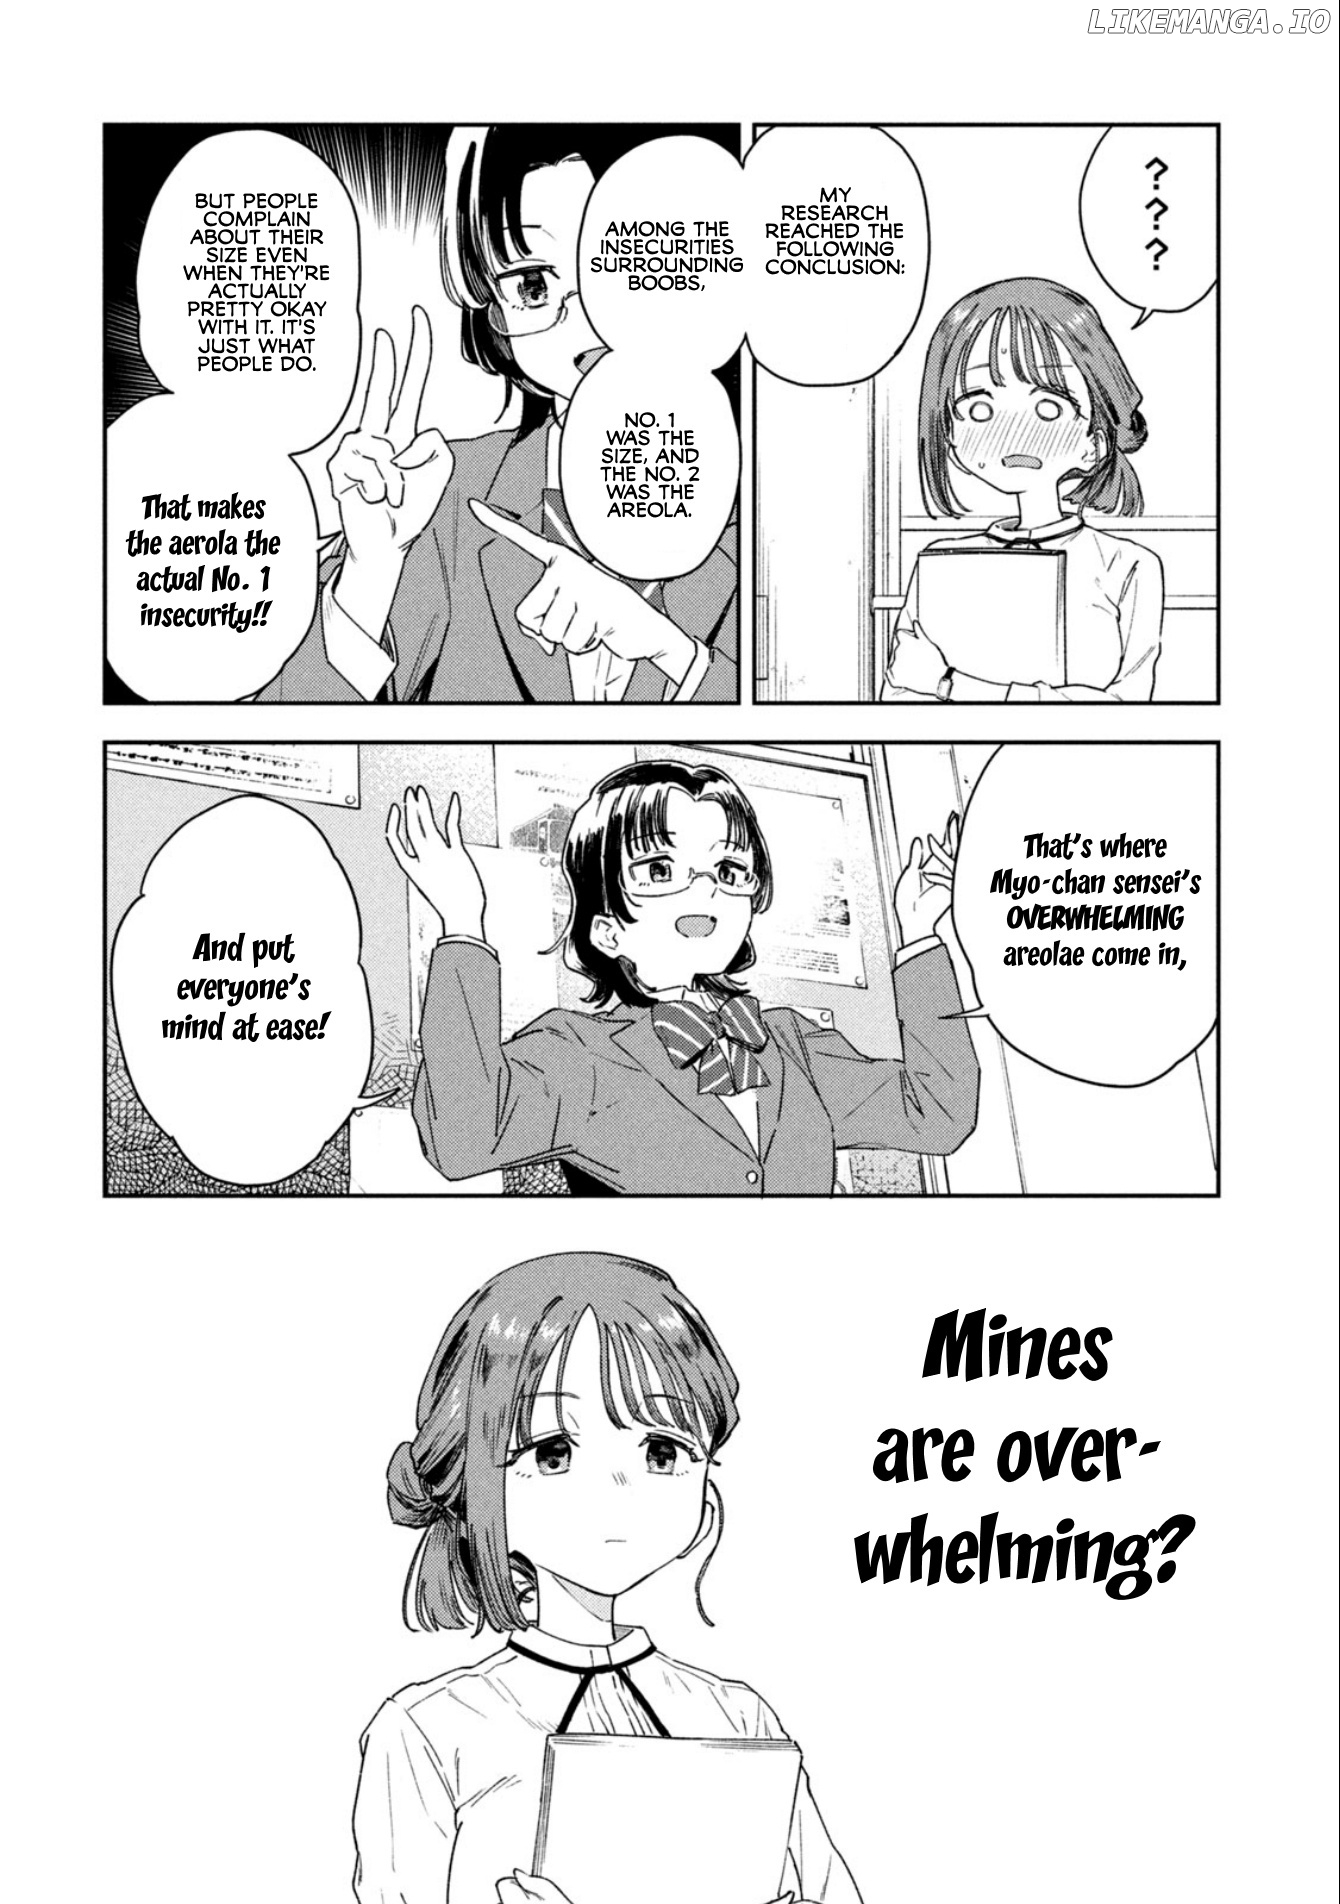 Miyo-Chan Sensei Said So chapter 2 - page 8